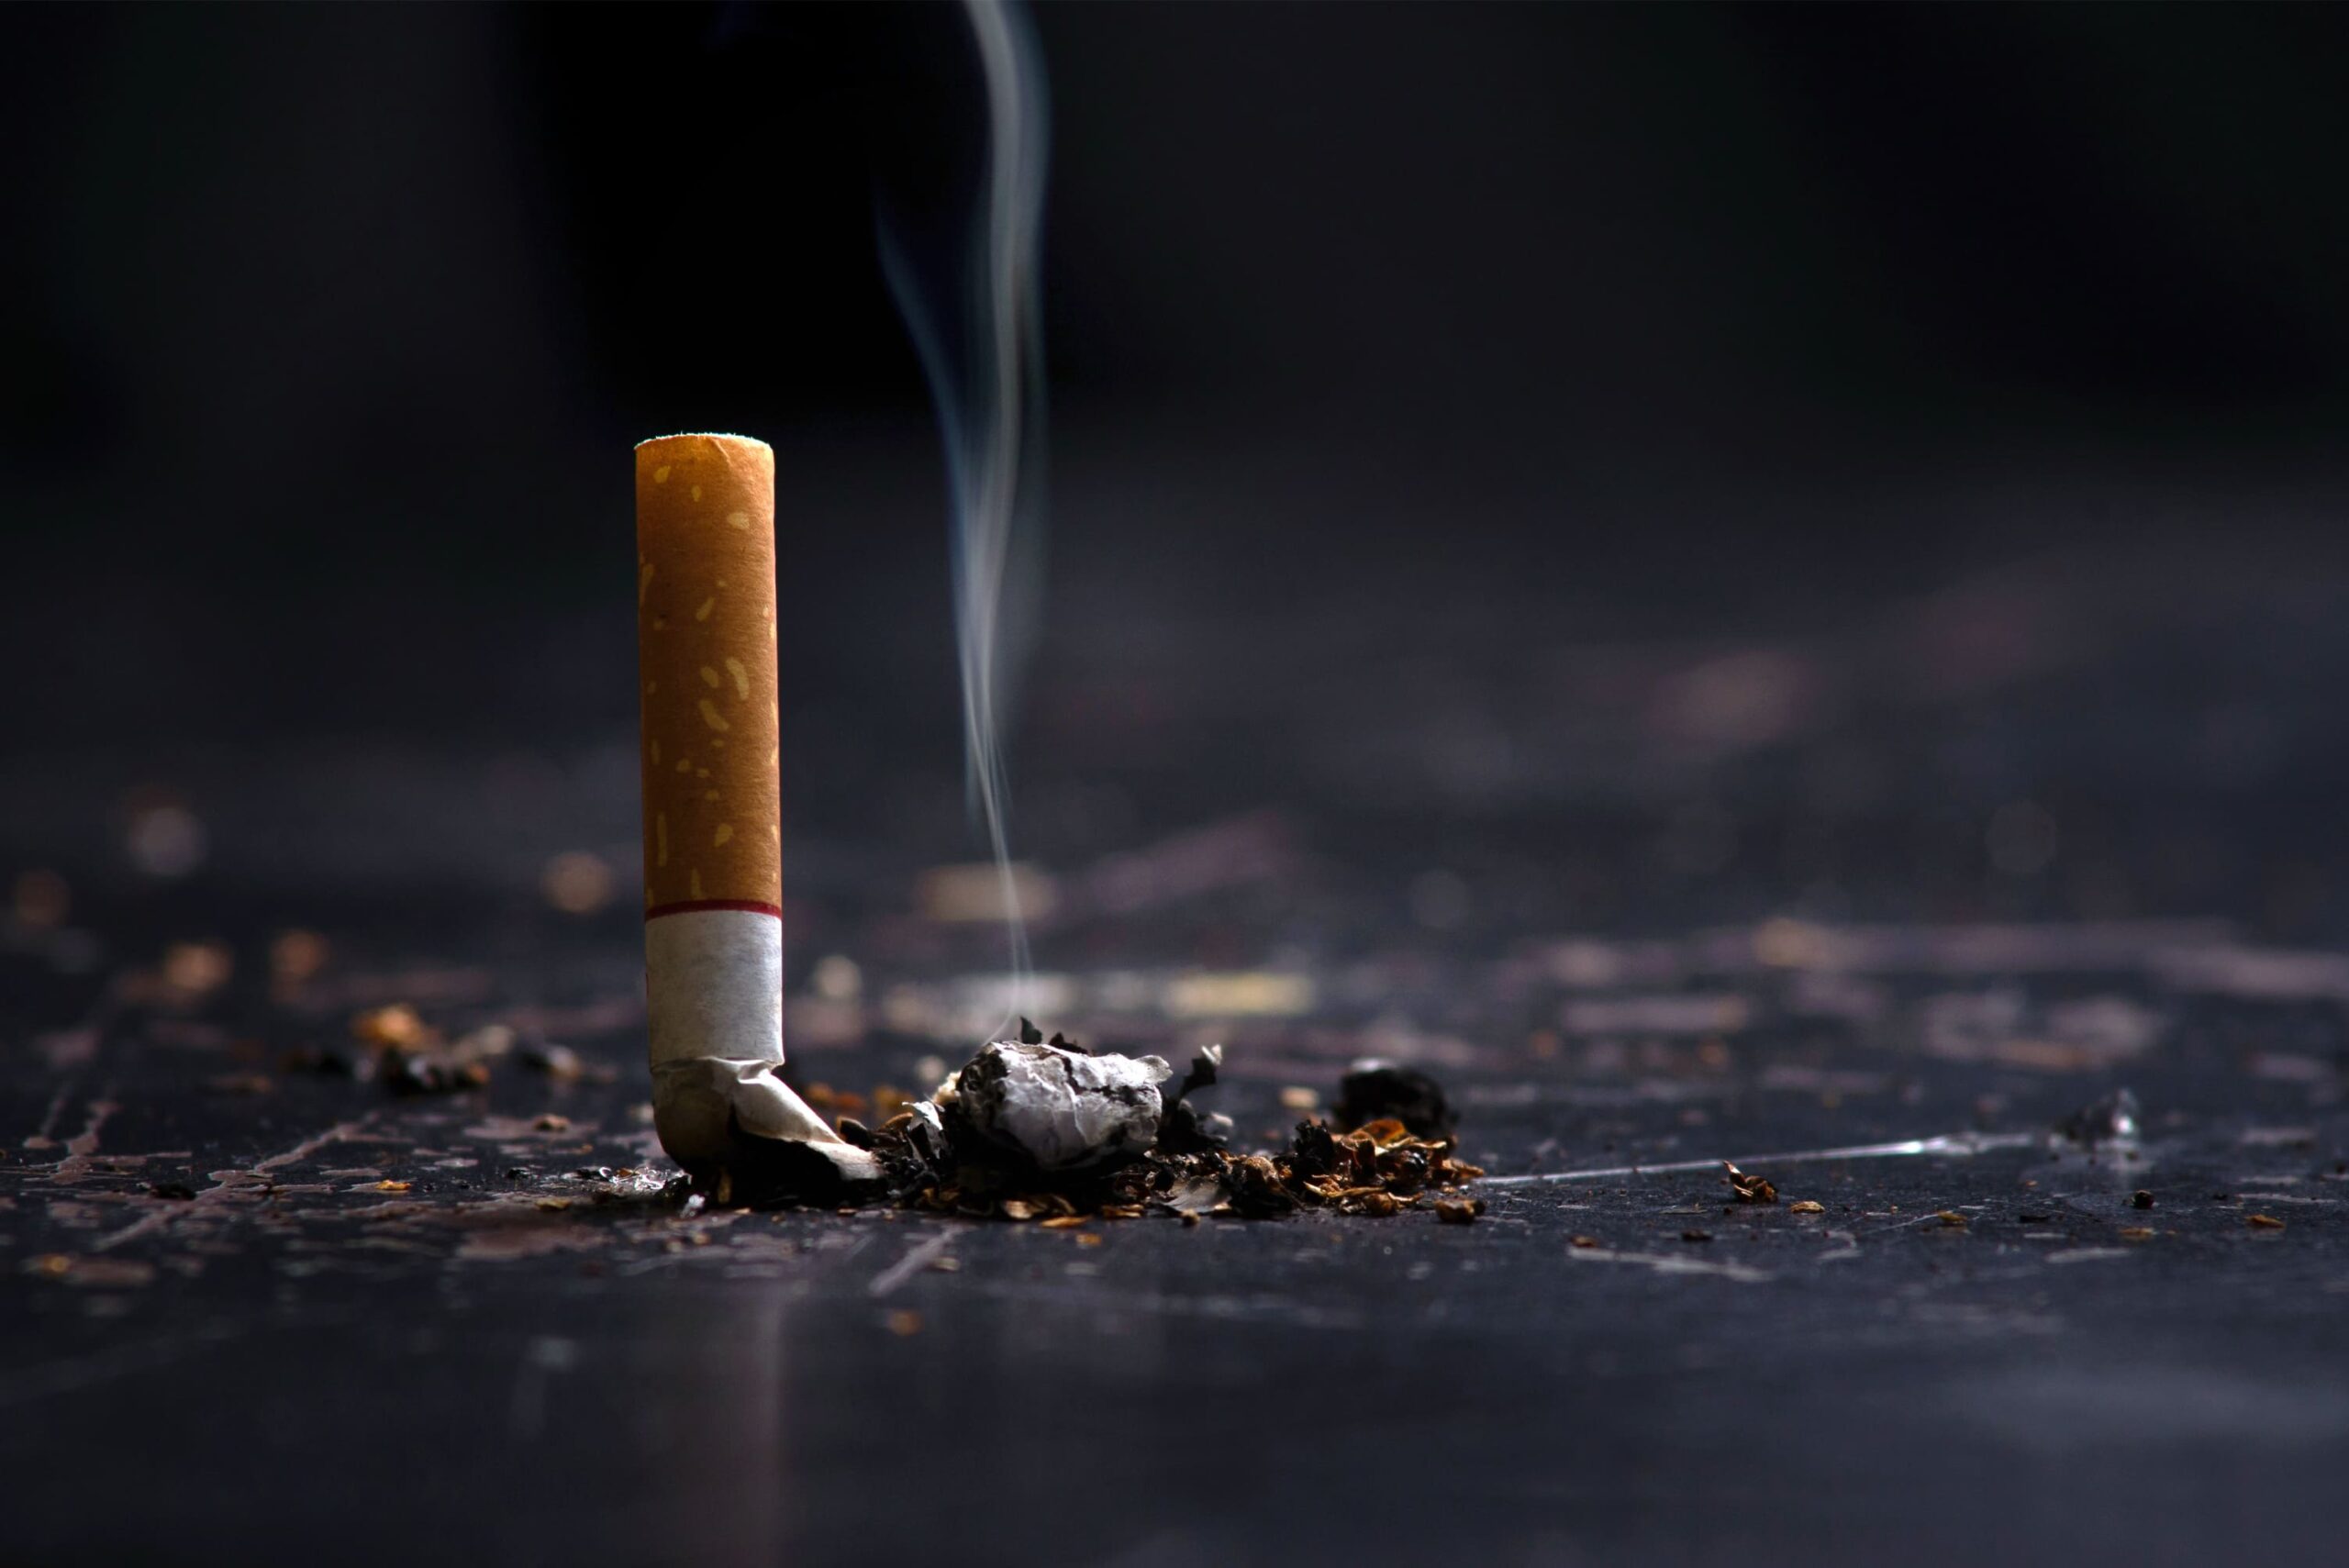  La consommation de tabac en France : Pourquoi rentre-t-on dans le tabagisme et comment en sort-on si difficilement  